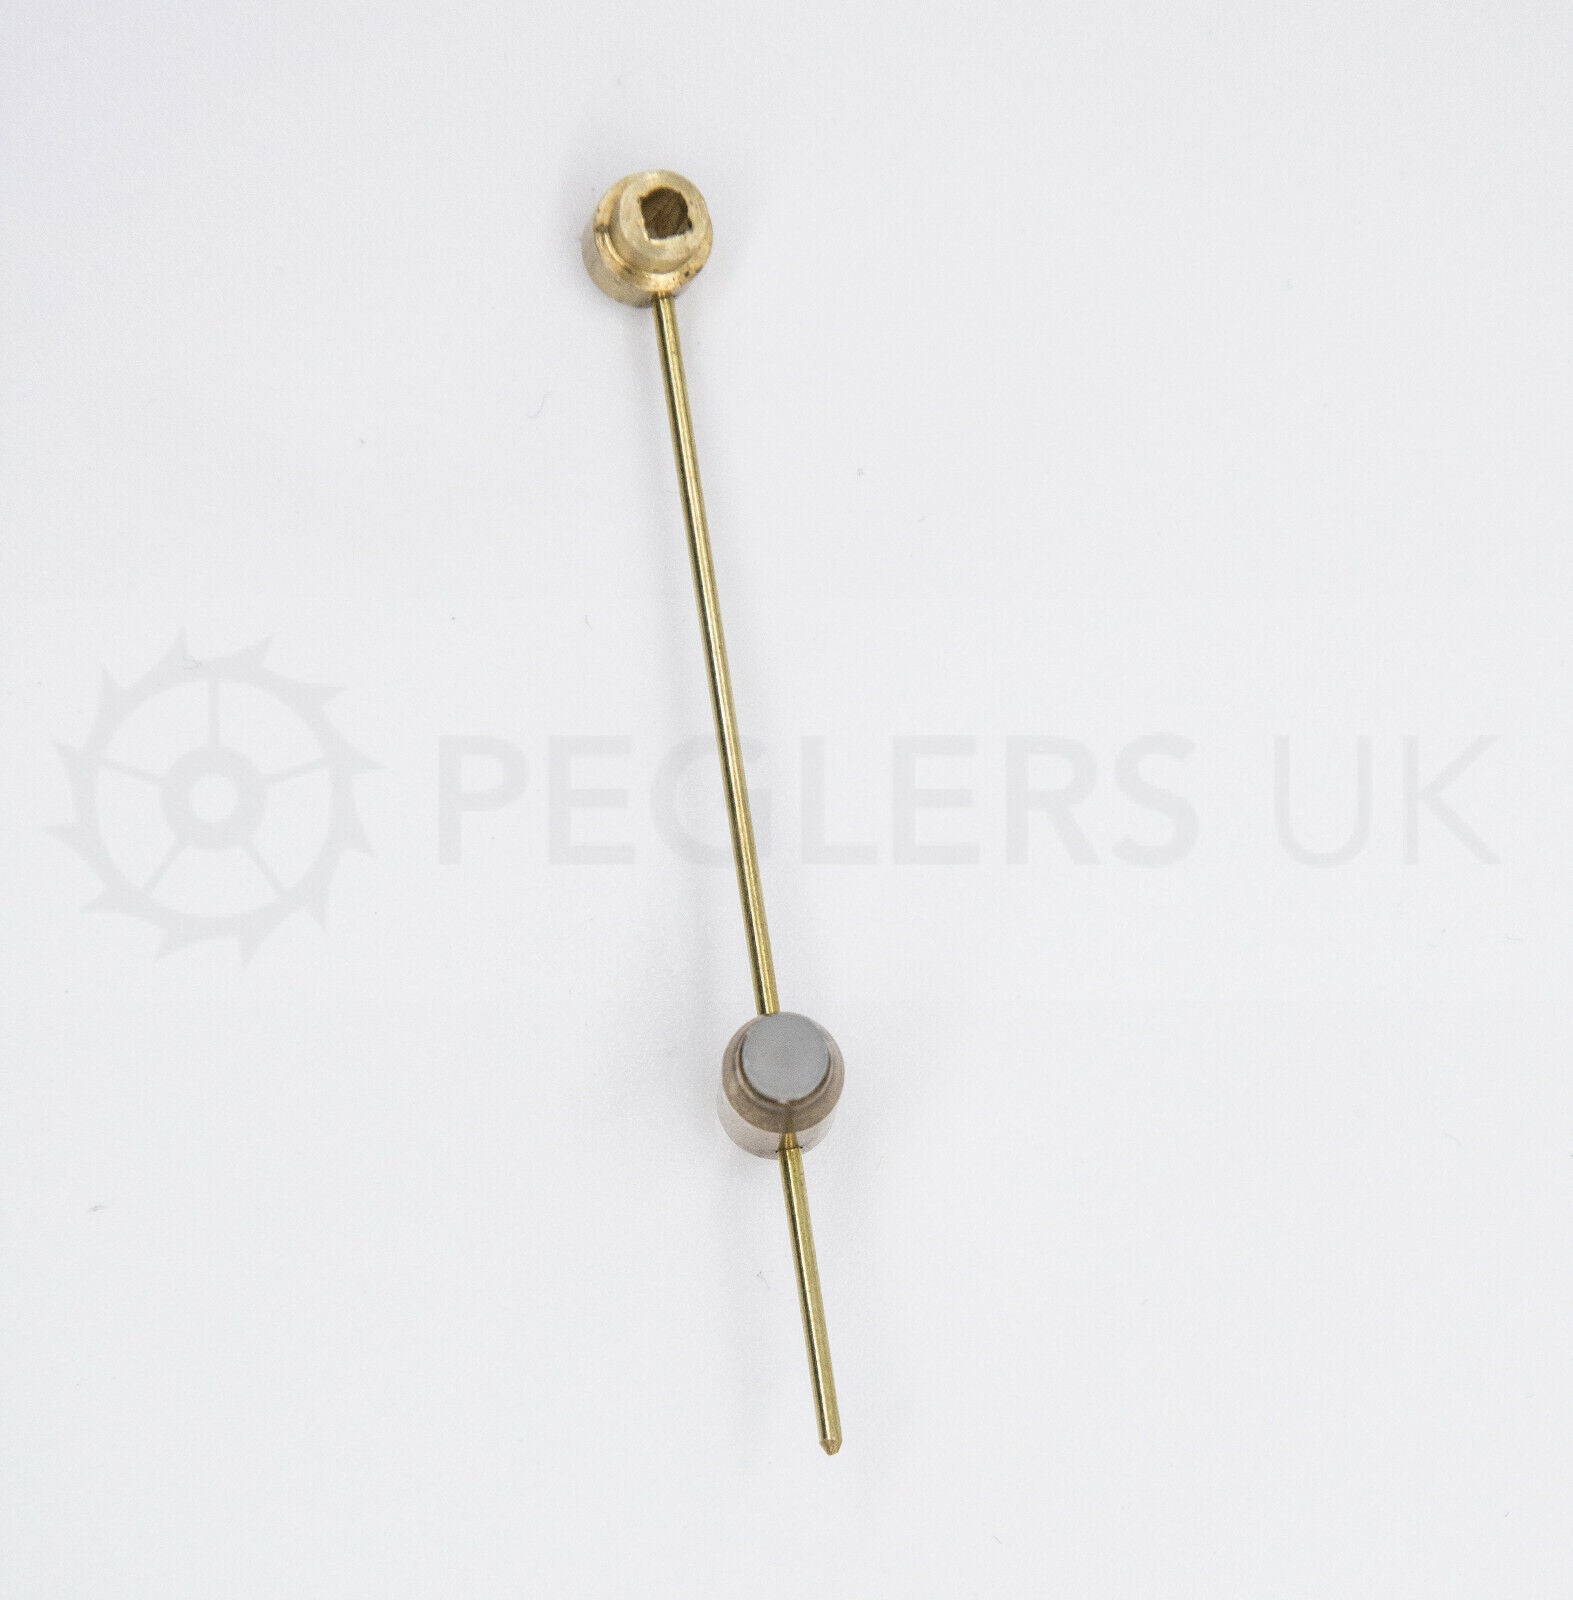 Bell Hammer for French Clocks - Nylon Head